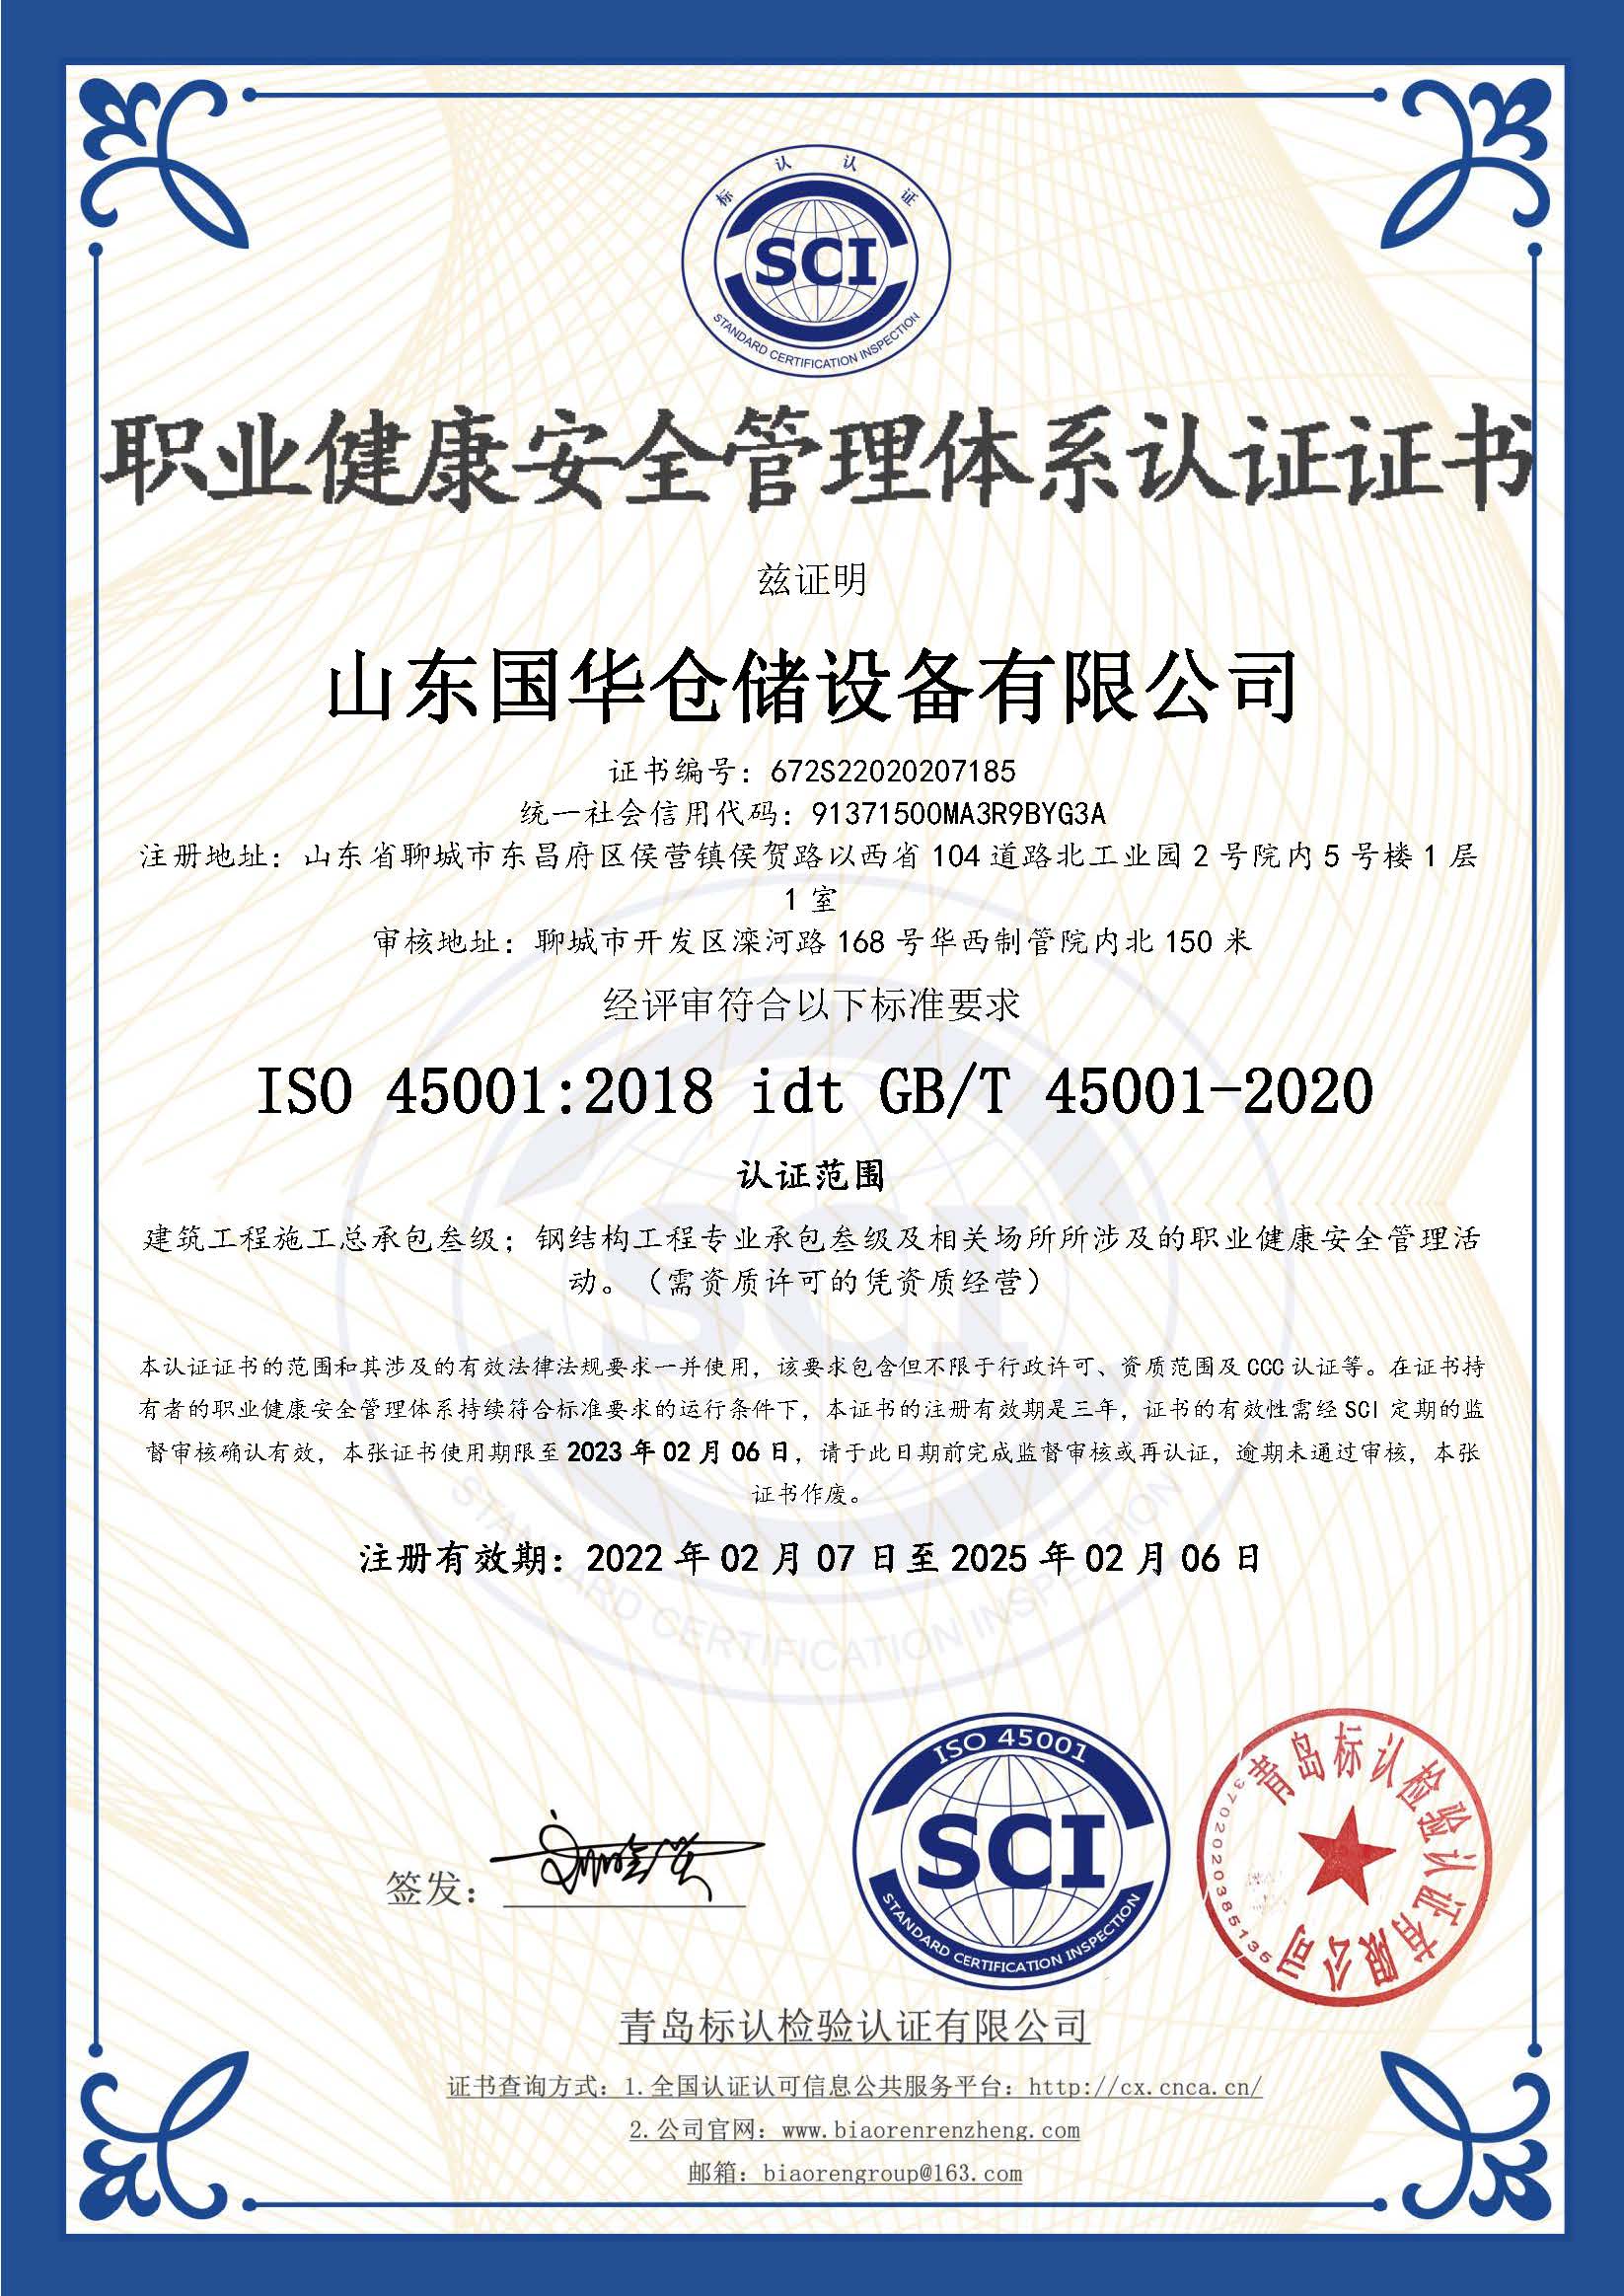 石家庄钢板仓职业健康安全管理体系认证证书